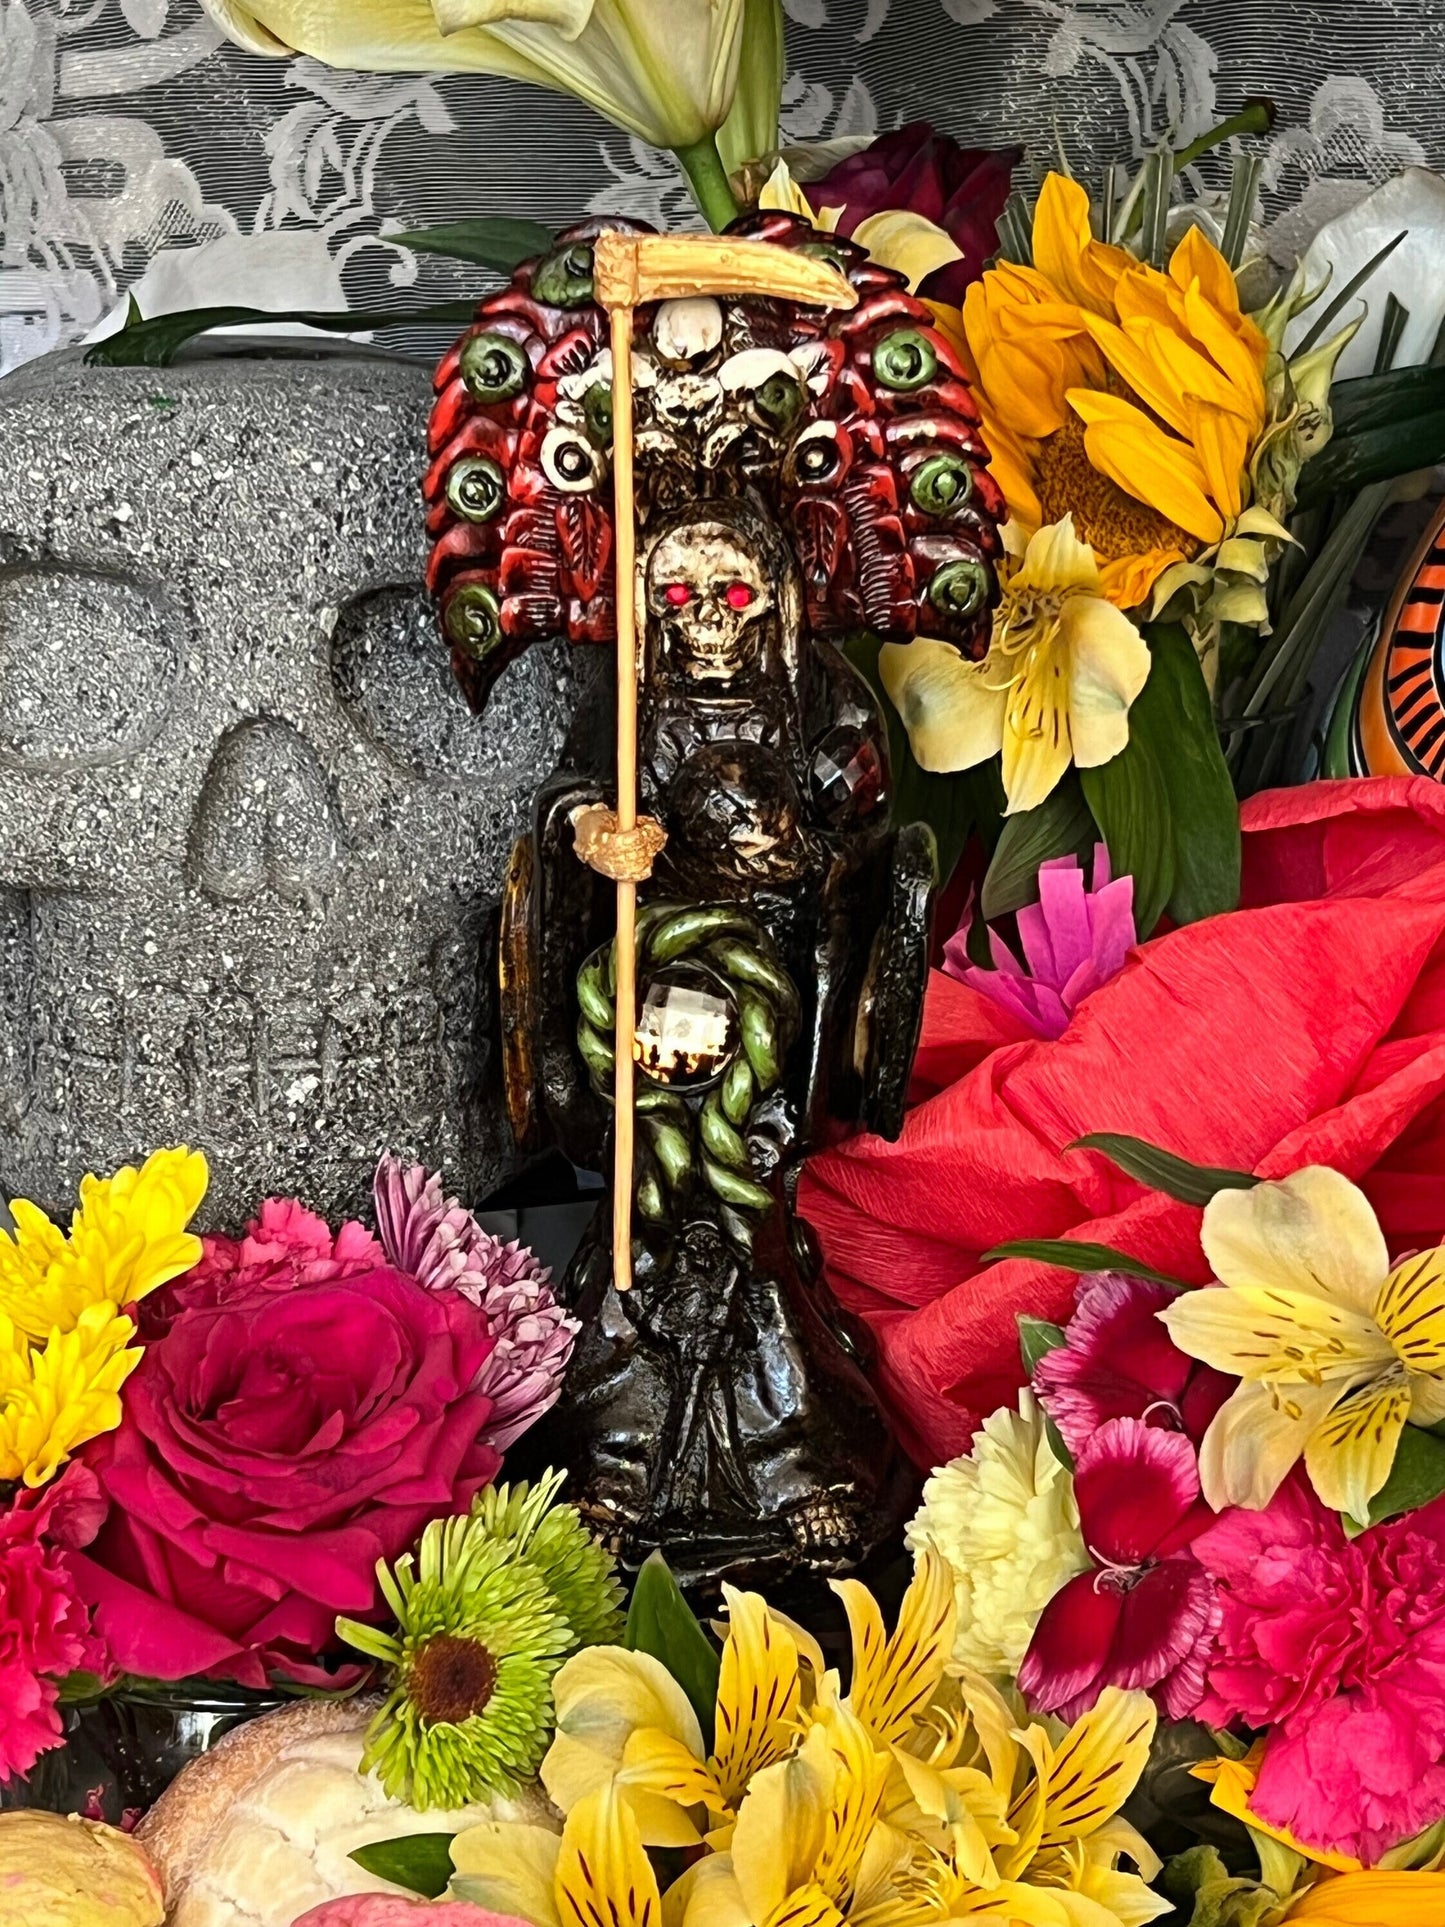 Santa Muerte Azteca Statue + 24K Gold + Baptized + Fixed + Made in Mexico + Aztek